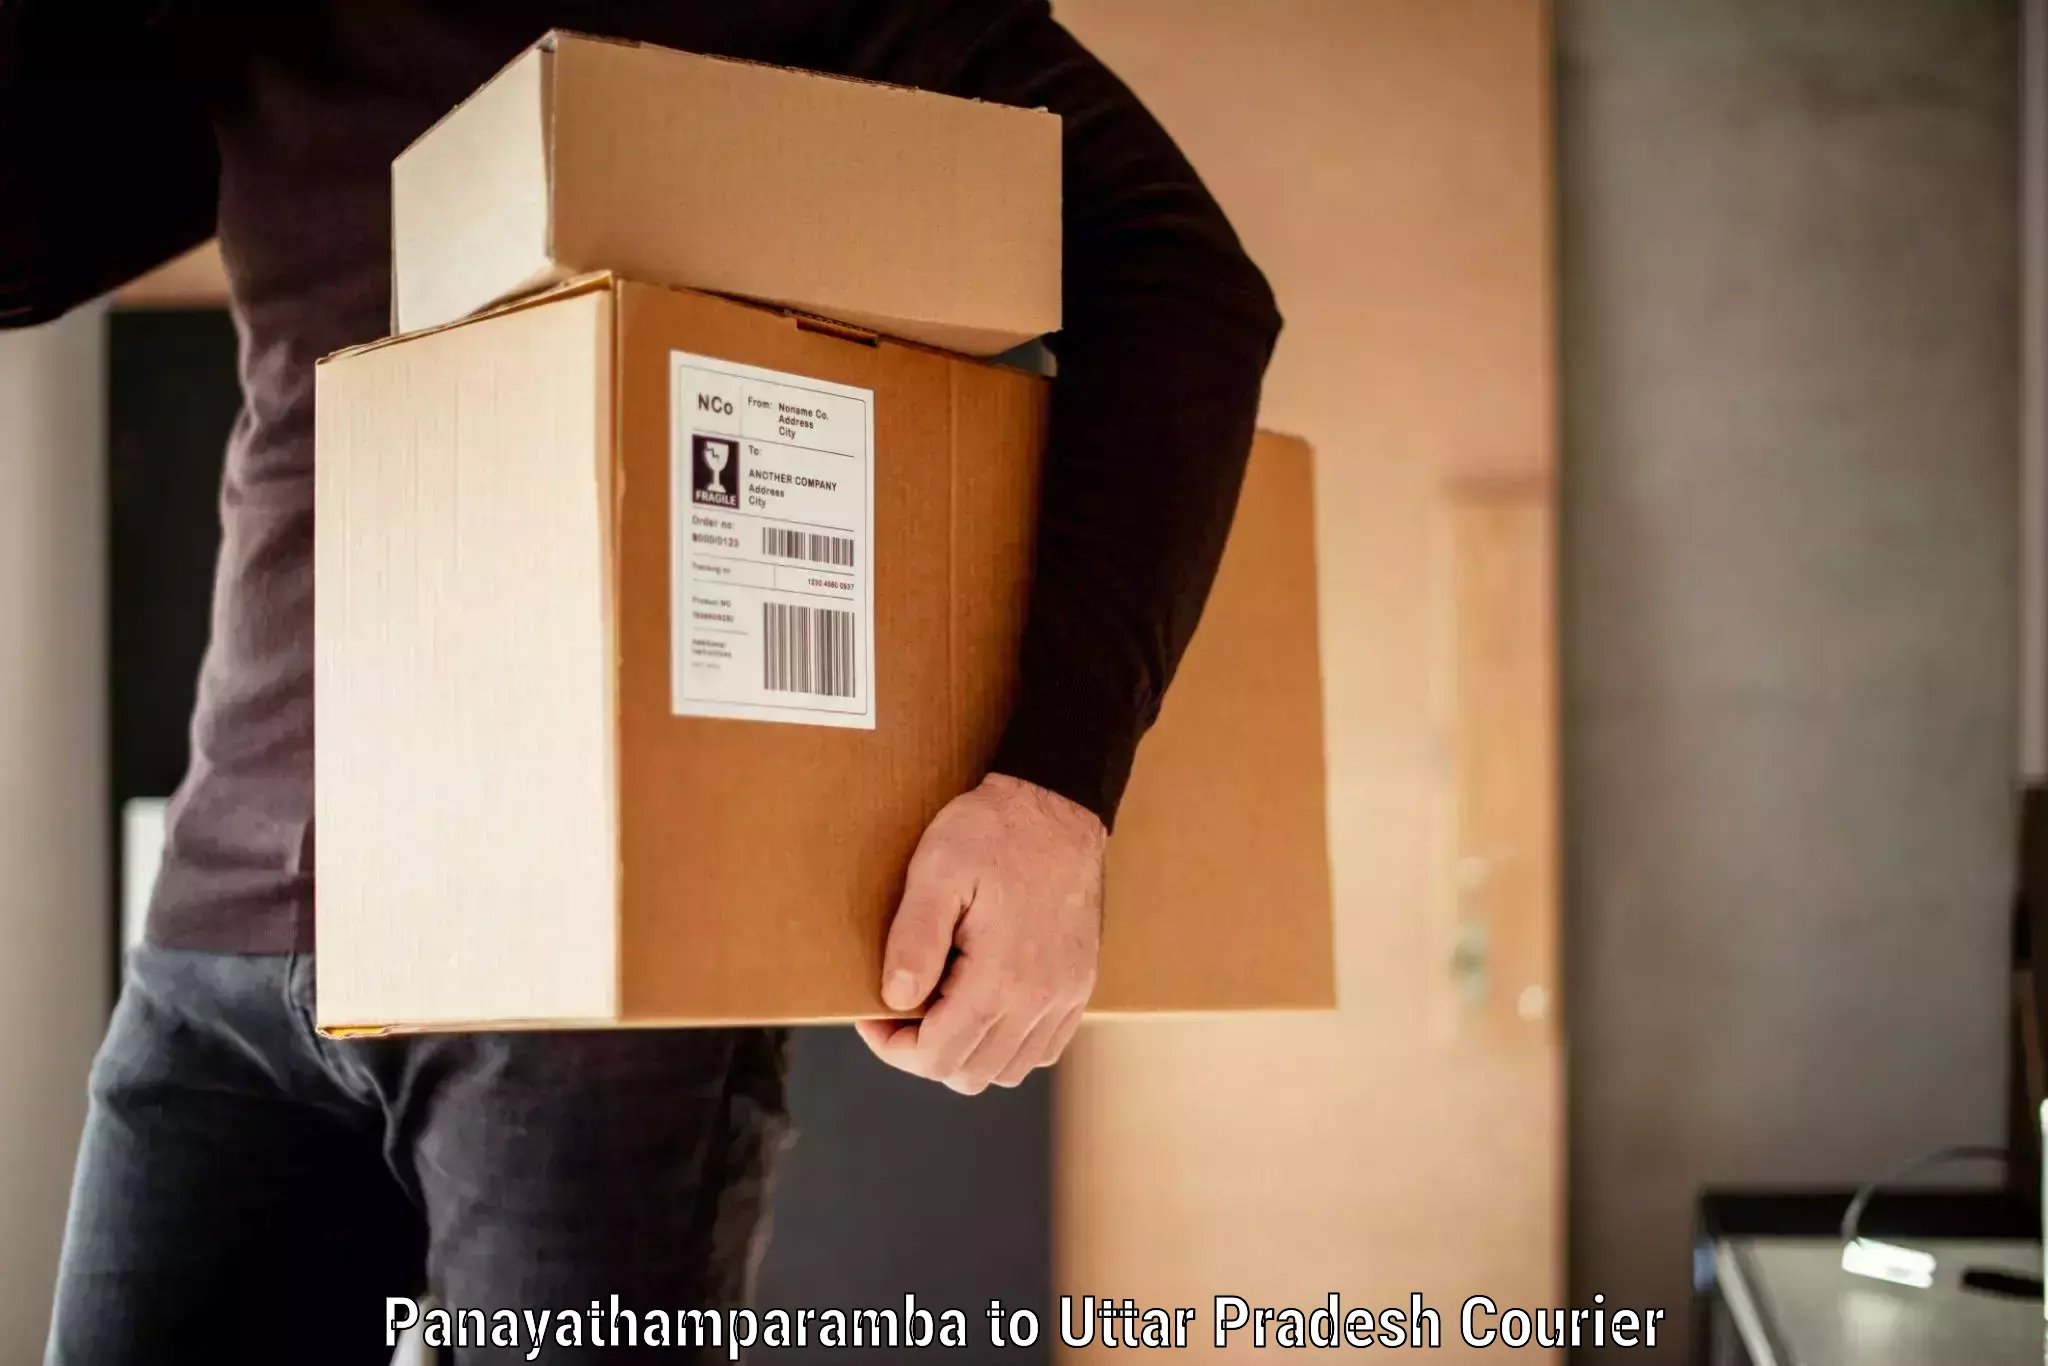 Luggage dispatch service Panayathamparamba to Mohanlalganj